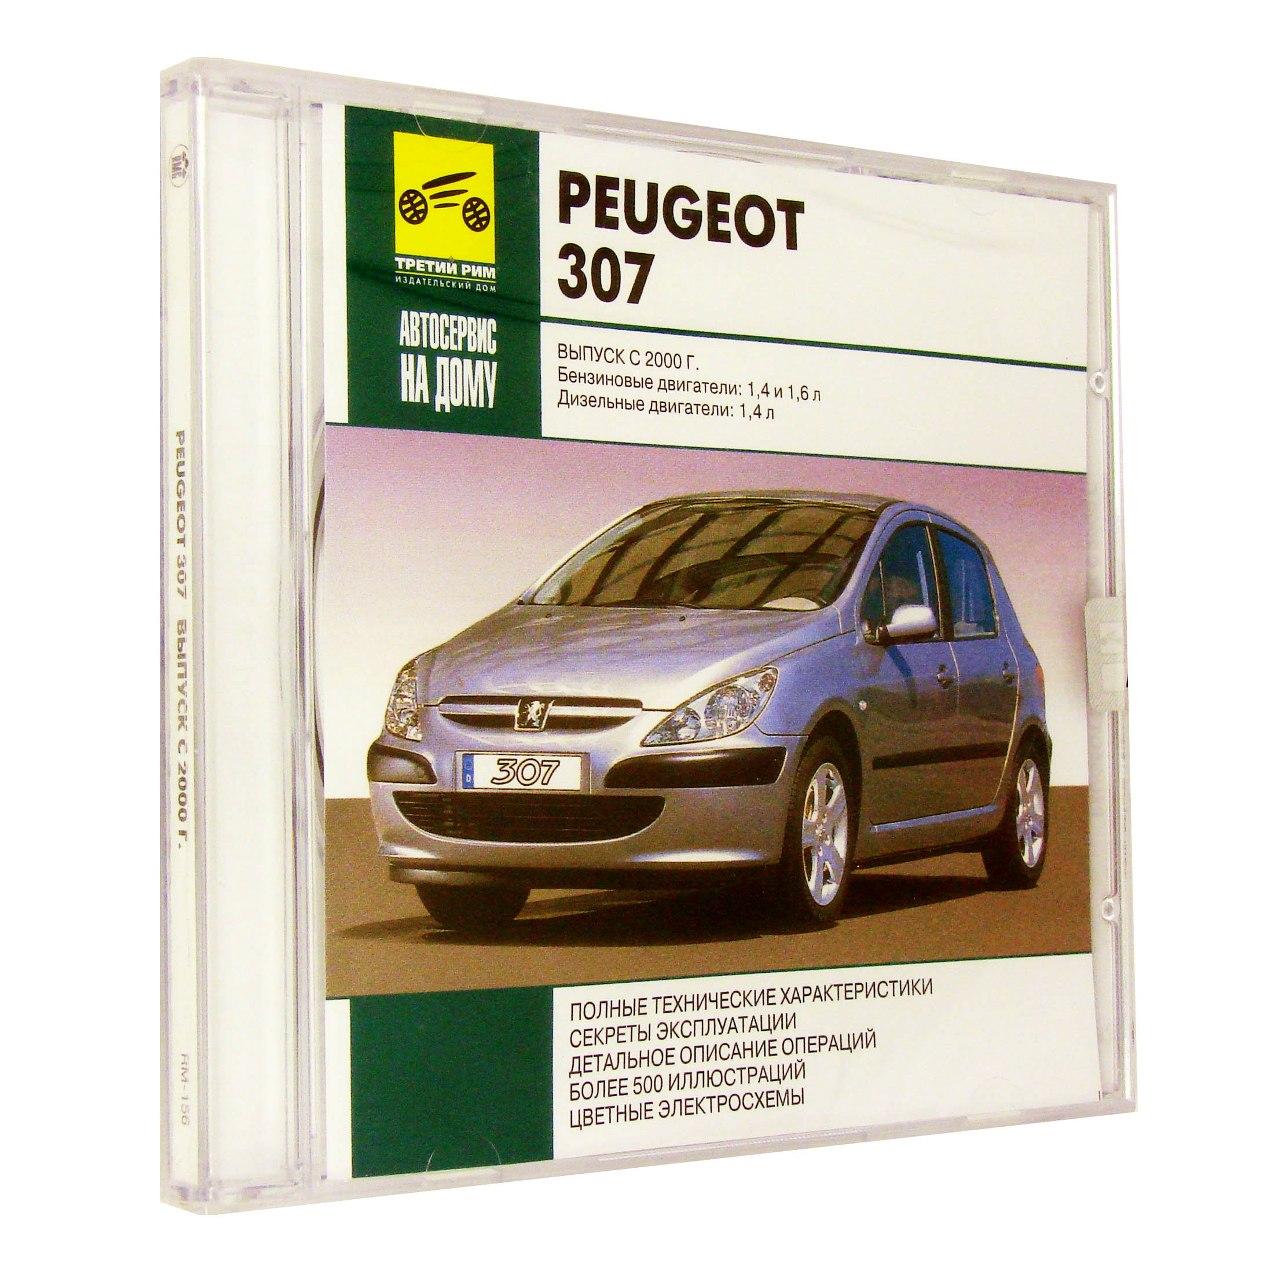 Компьютерный компакт-диск Peugeot 307 Выпуск c 2000 Автосервис на дому. (ПК), фирма "RMG Multimedia", 1CD